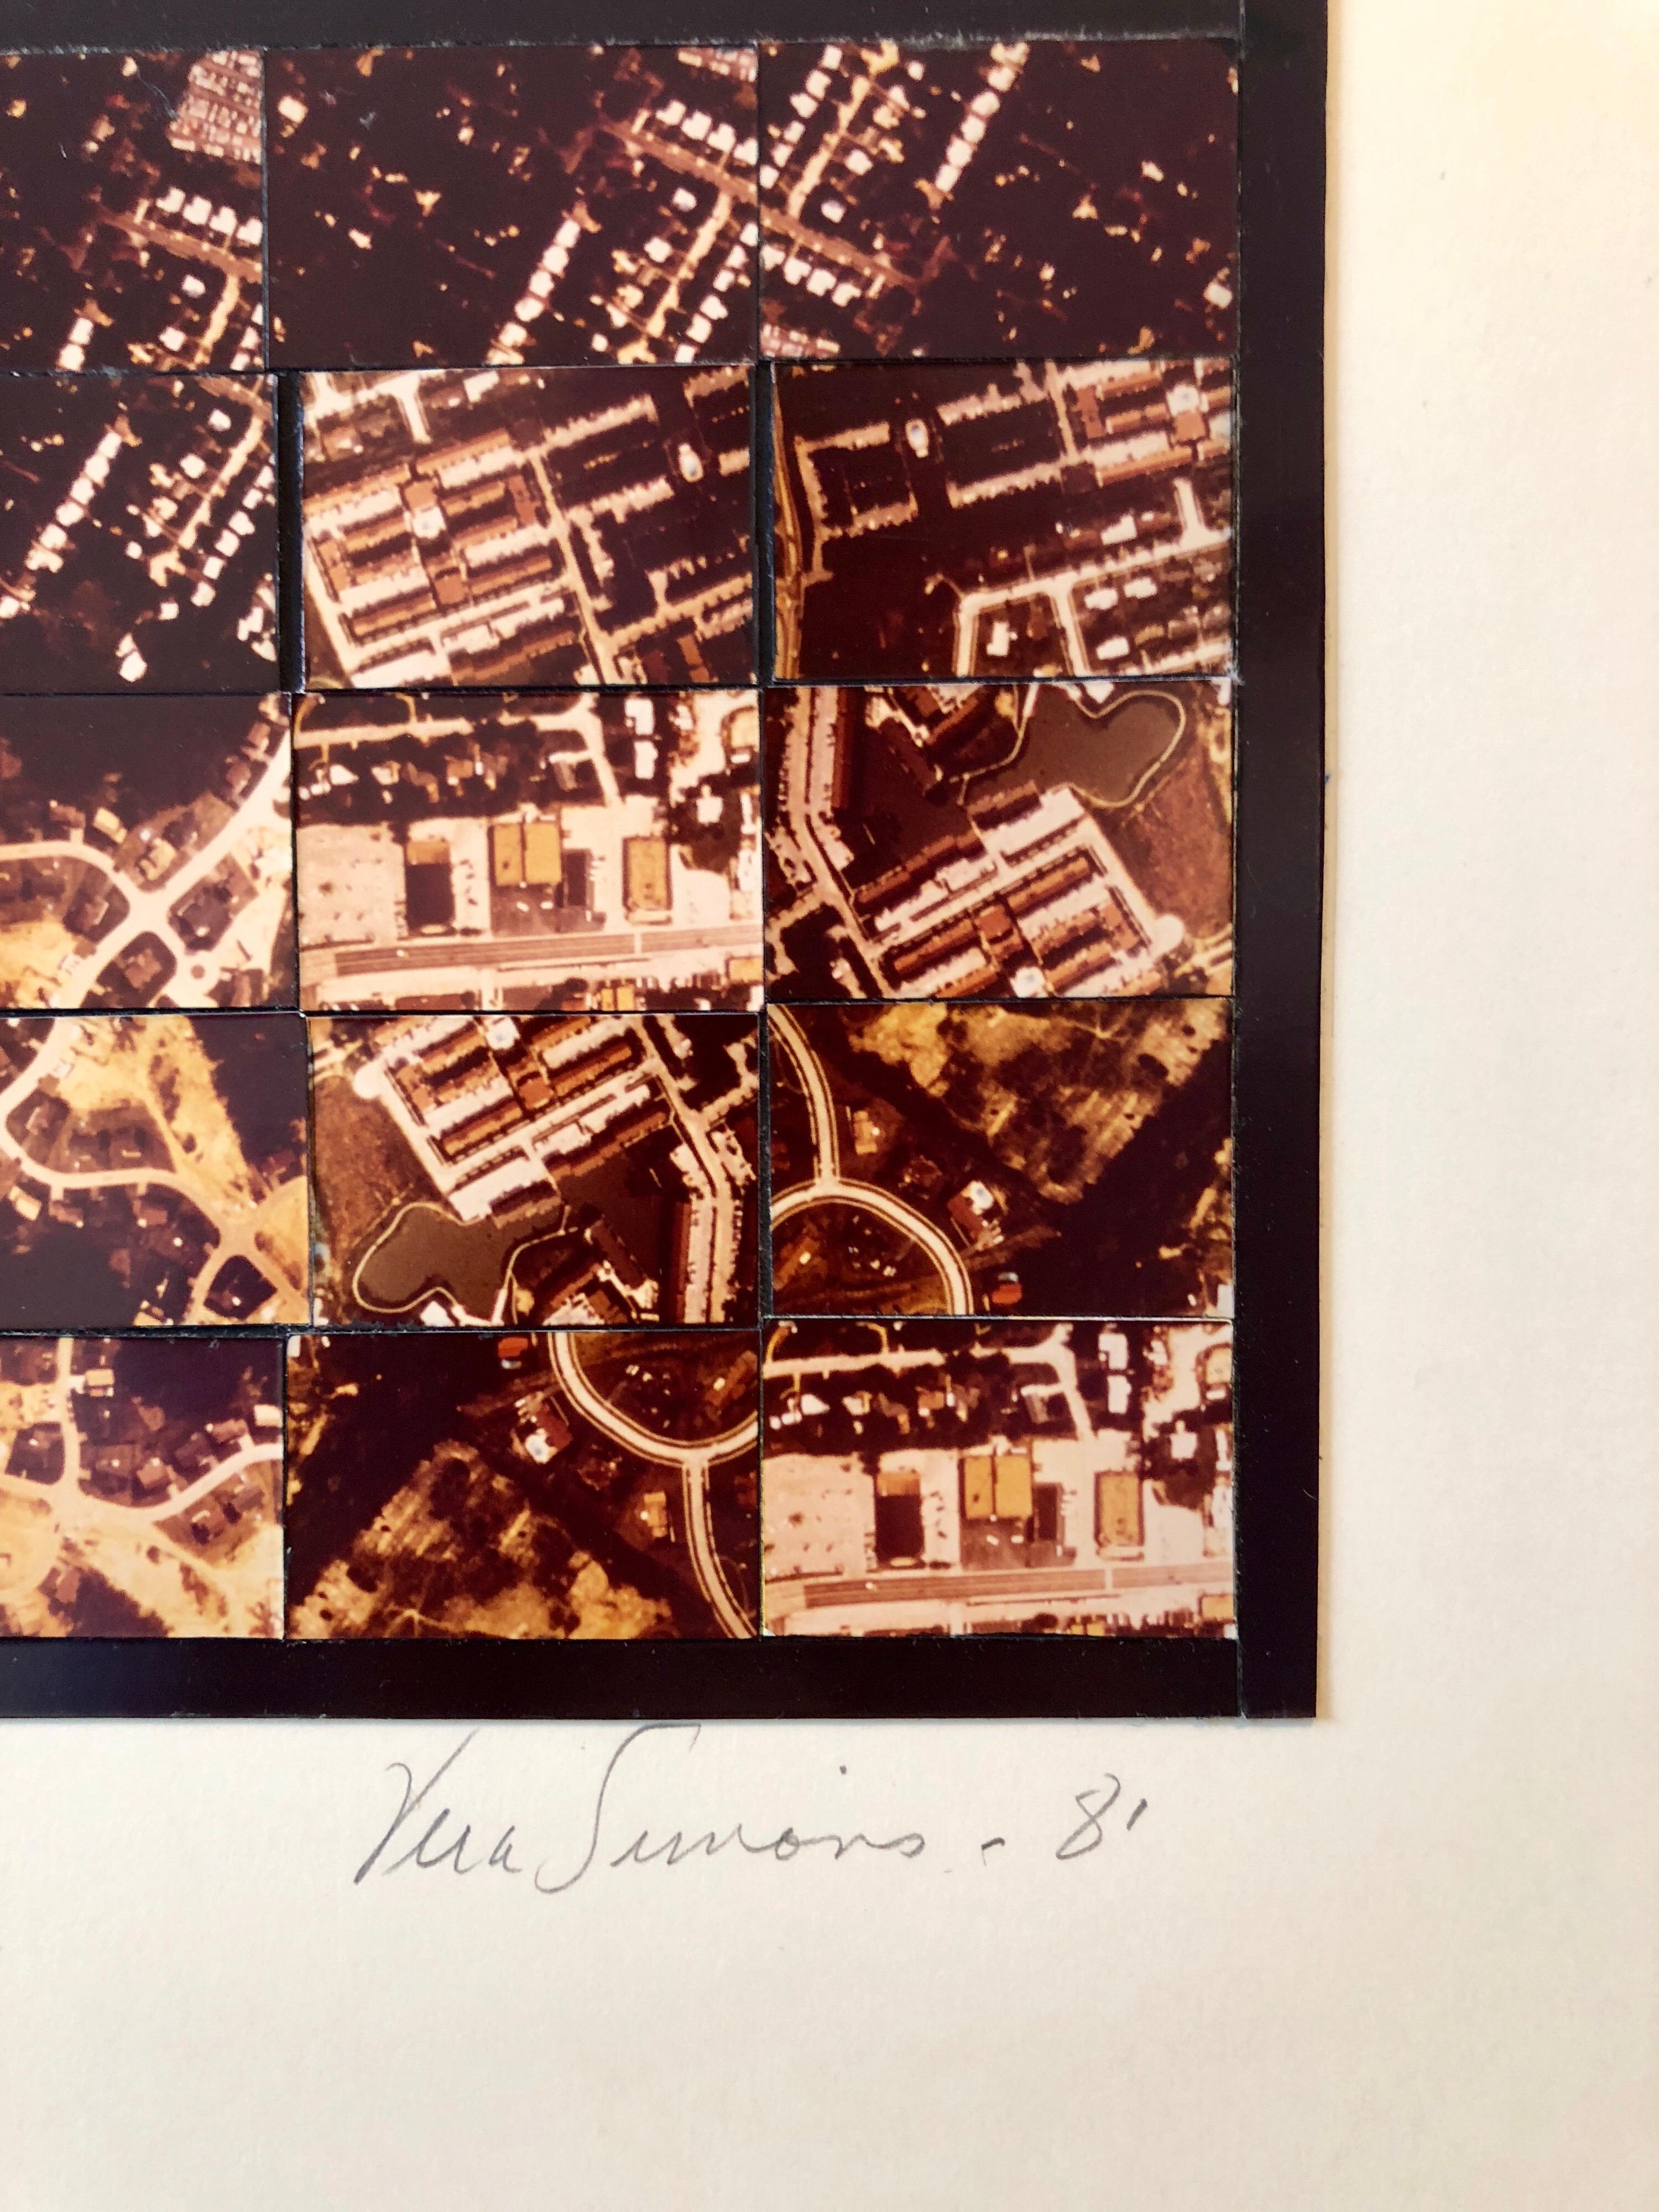 Celle-ci représente une vue aérienne de Saint Louis, Missouri, et est intitulée St. Louis, Mo 

SIMONS, Vera (1920 - 2012)
Vera Artistics était une pionnière germano-américaine de l'aviation, une aéronaute et une artiste du collage photographique. 